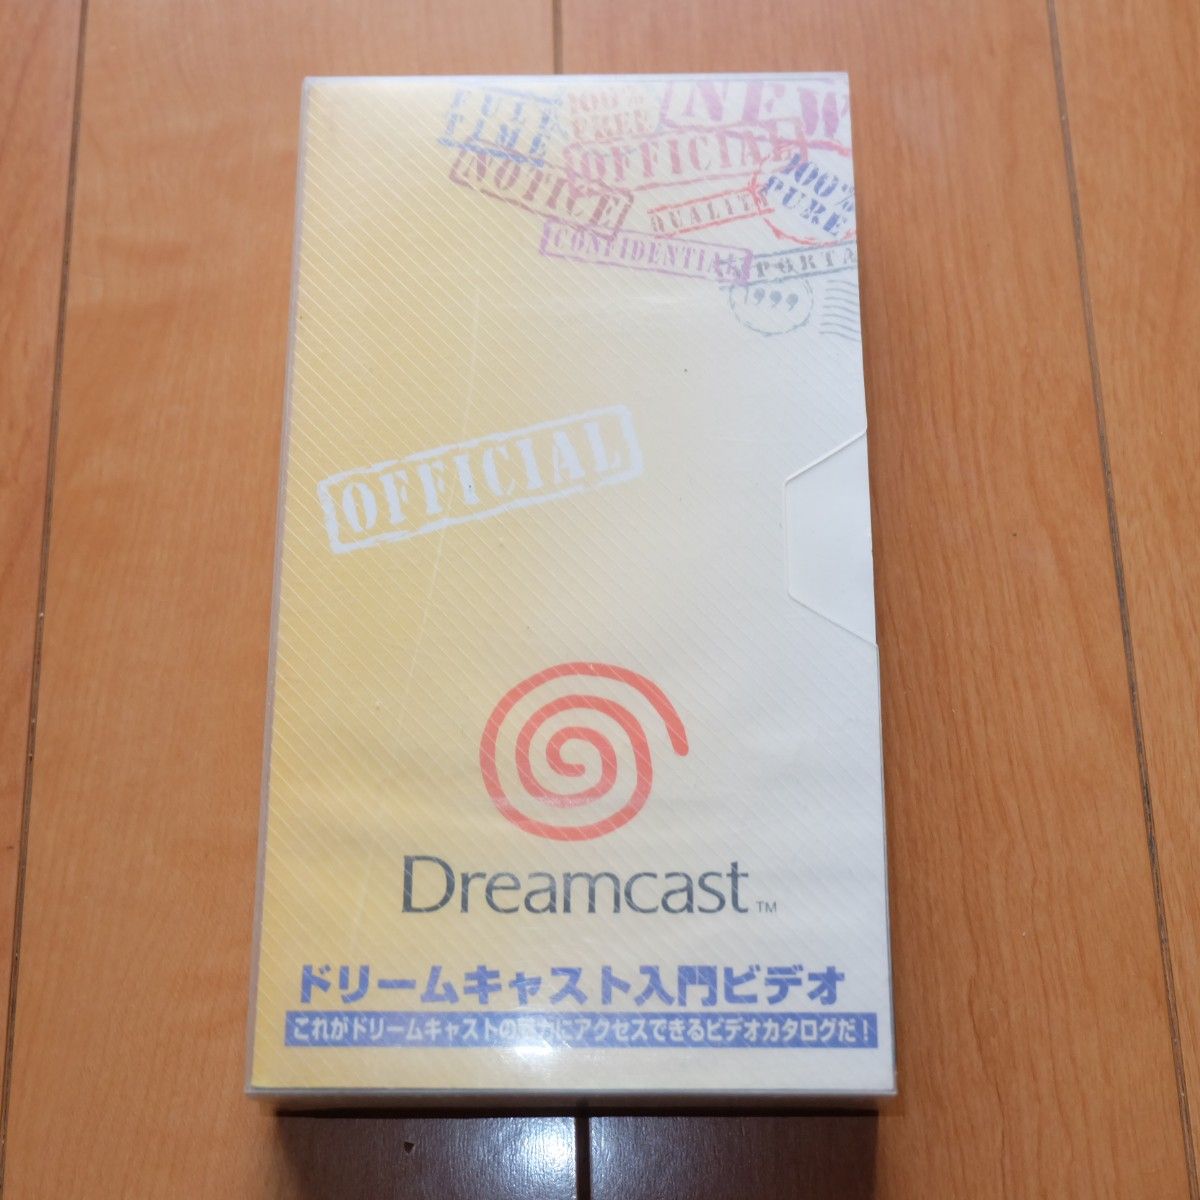 非売品 ドリームキャスト入門ビデオ ビデオテープ Dreamcast カタログ プロモーションビデオ VHS 1999年春